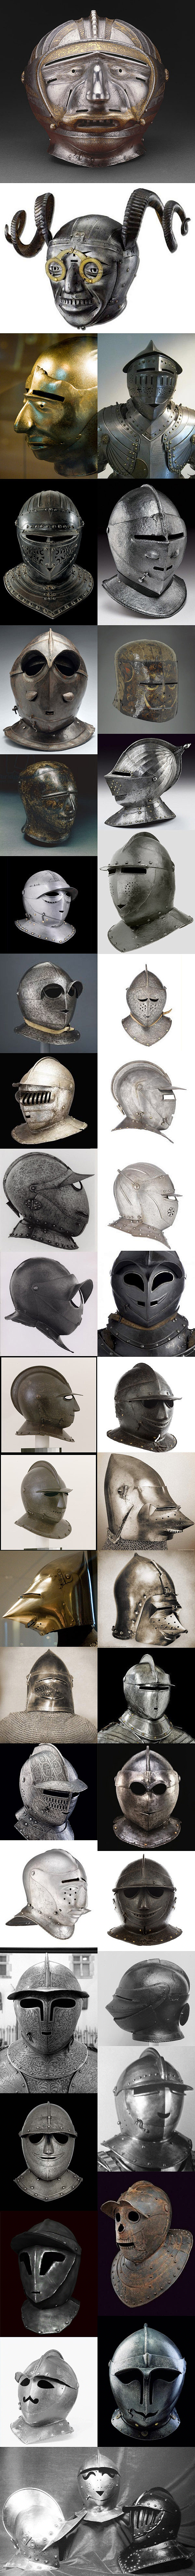 【完全不“严肃”的头盔们】欧式甲胄的头盔...